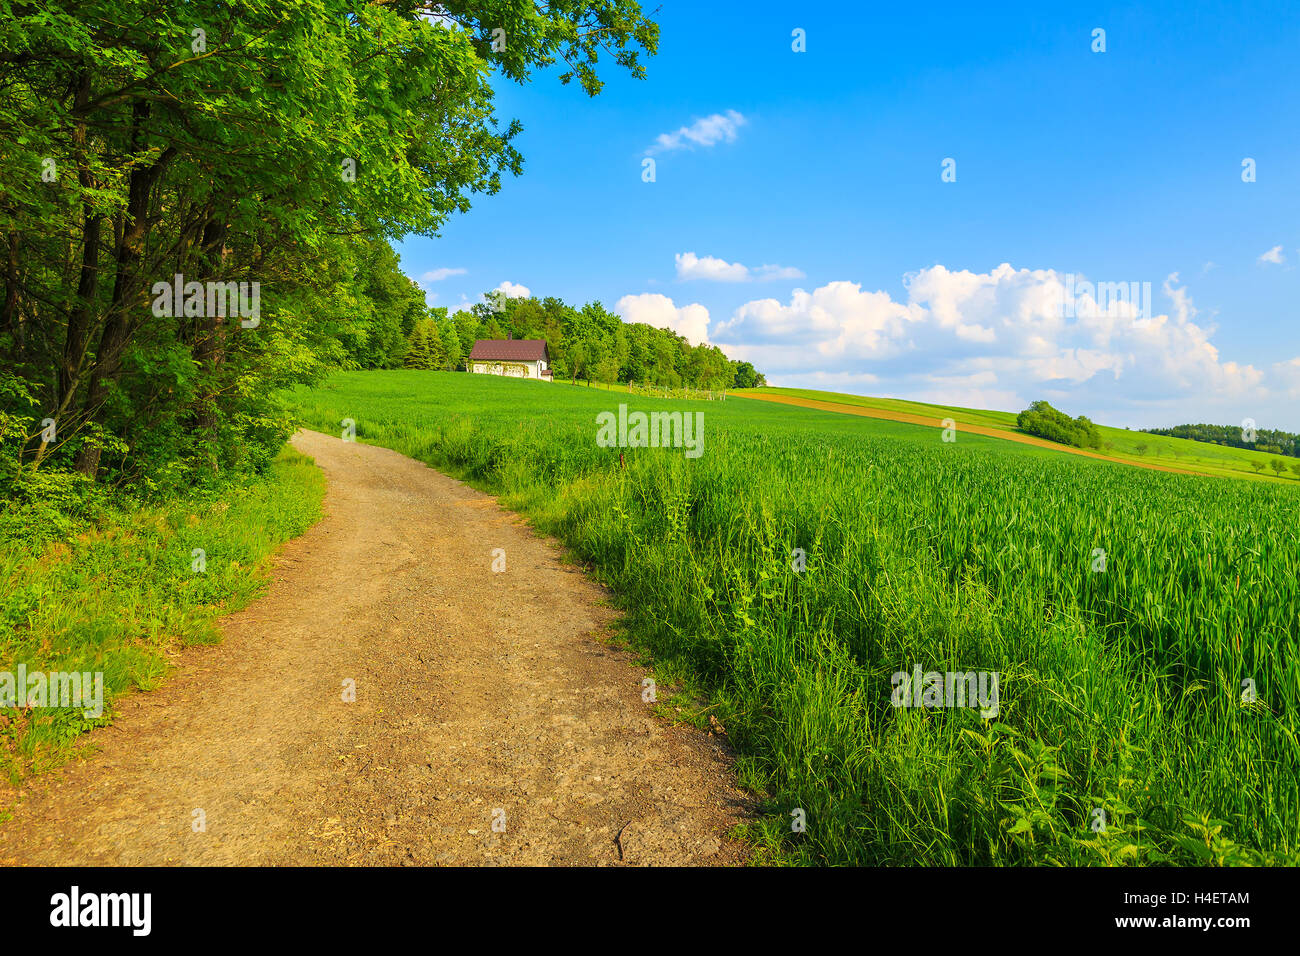 Carretera en campos de cultivo con casa verde en el fondo del paisaje paisaje primaveral, Burgenland, Austria Foto de stock